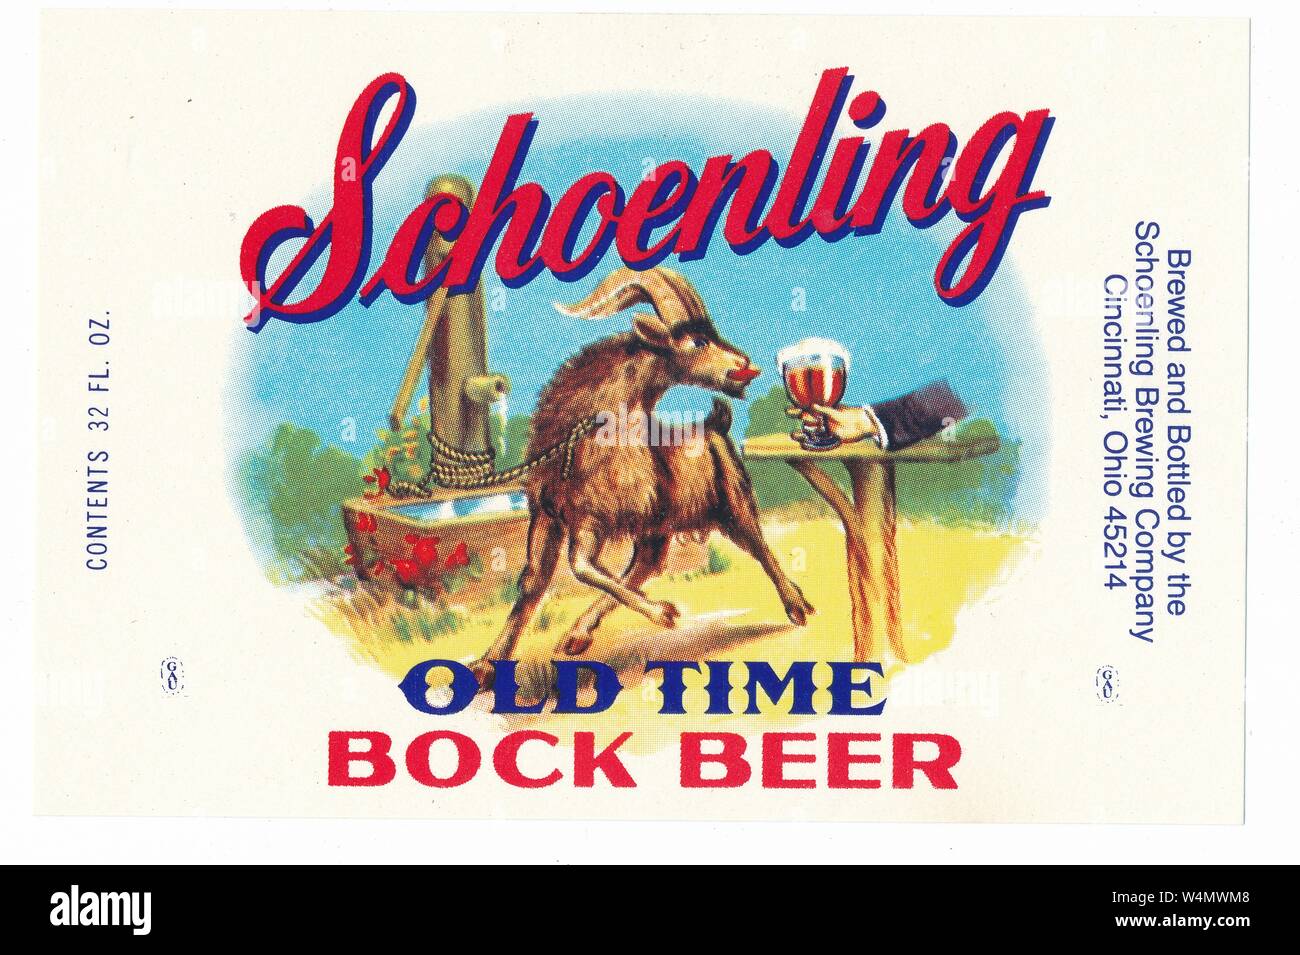 Vintage etiqueta de botella de cerveza, con una imagen de un macho cabrío alcanzando un vaso de cerveza, denominada "tiempo viejo choenling cerveza bock, ' fabricados por la Schoenling Brewing Company, Cincinnati, Ohio, 1955. () Foto de stock